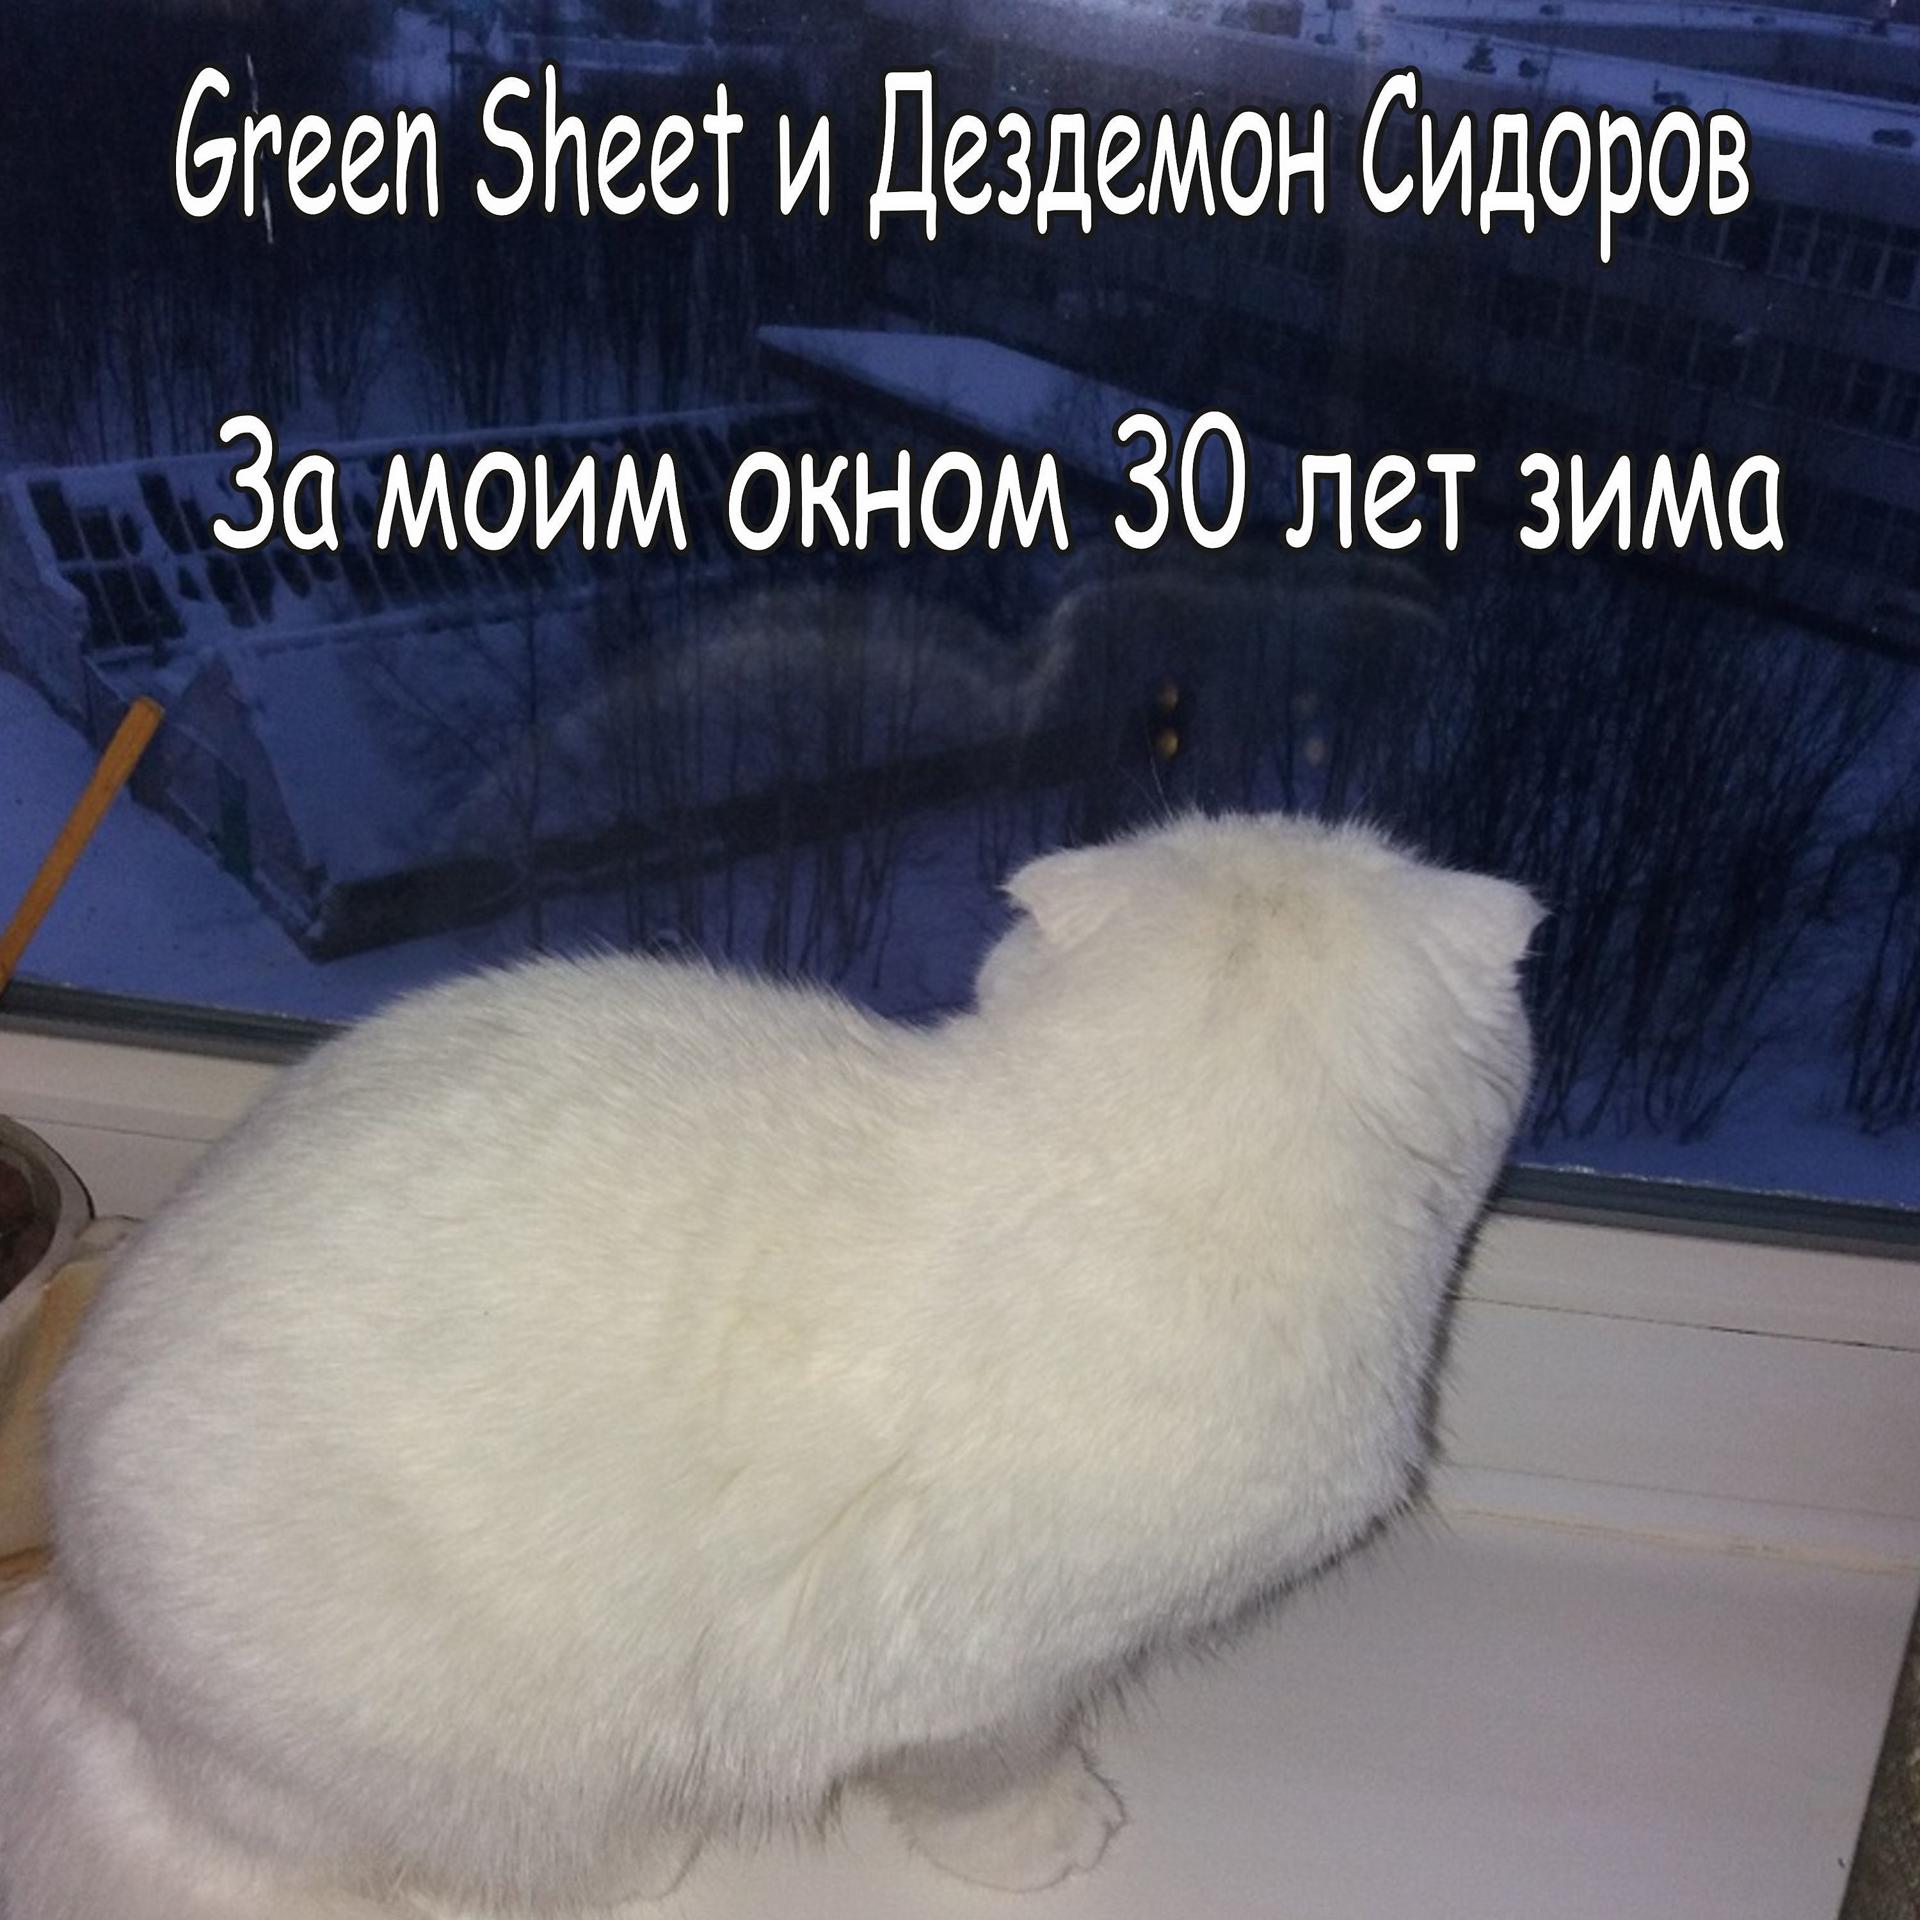 Green Sheet - фото